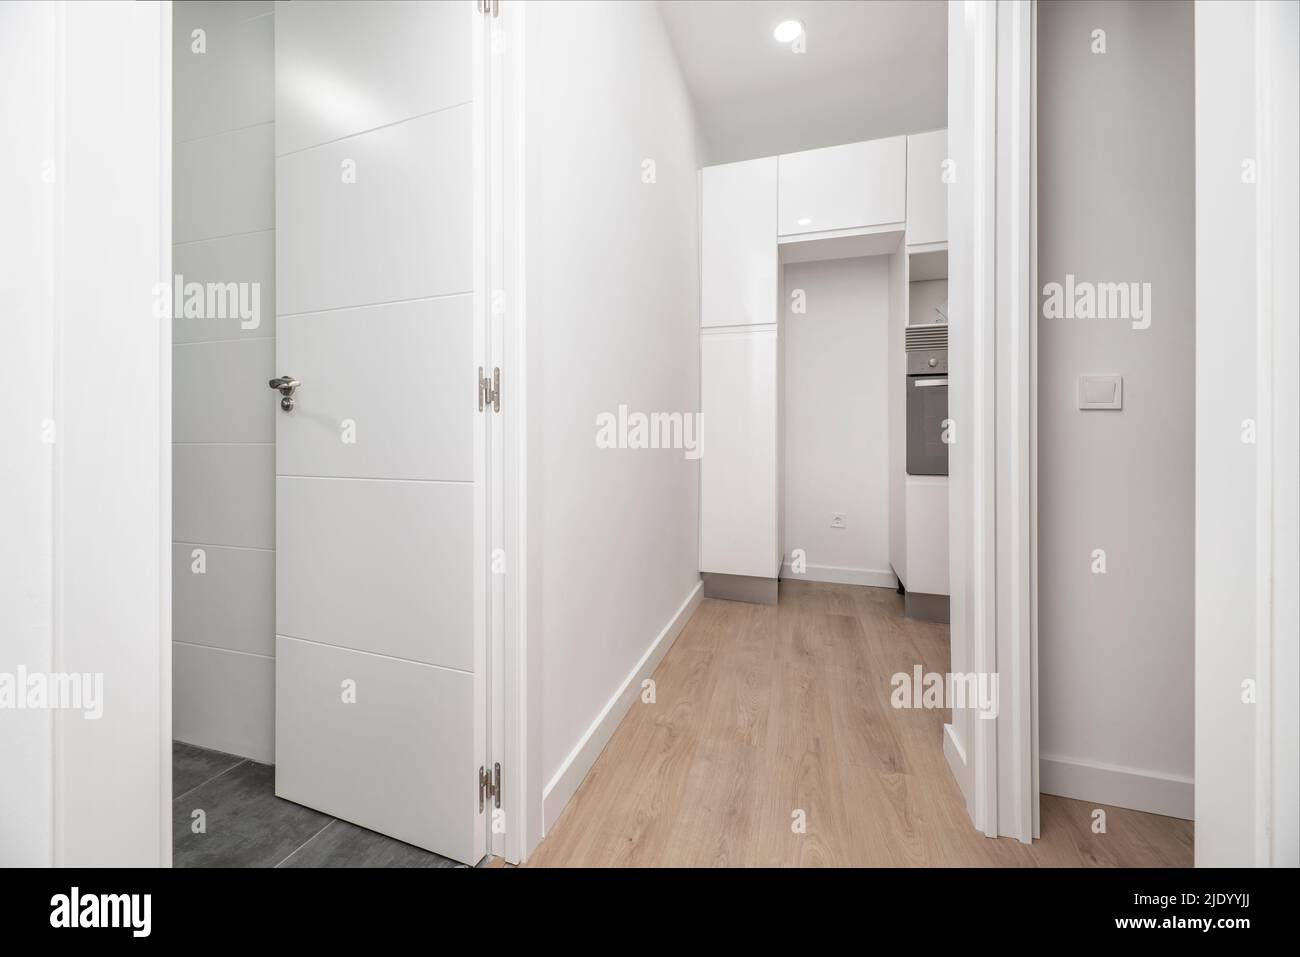 Couloir d'appartement vide avec couloirs en chêne clair, portes d'autres chambres, murs peints en blanc Banque D'Images